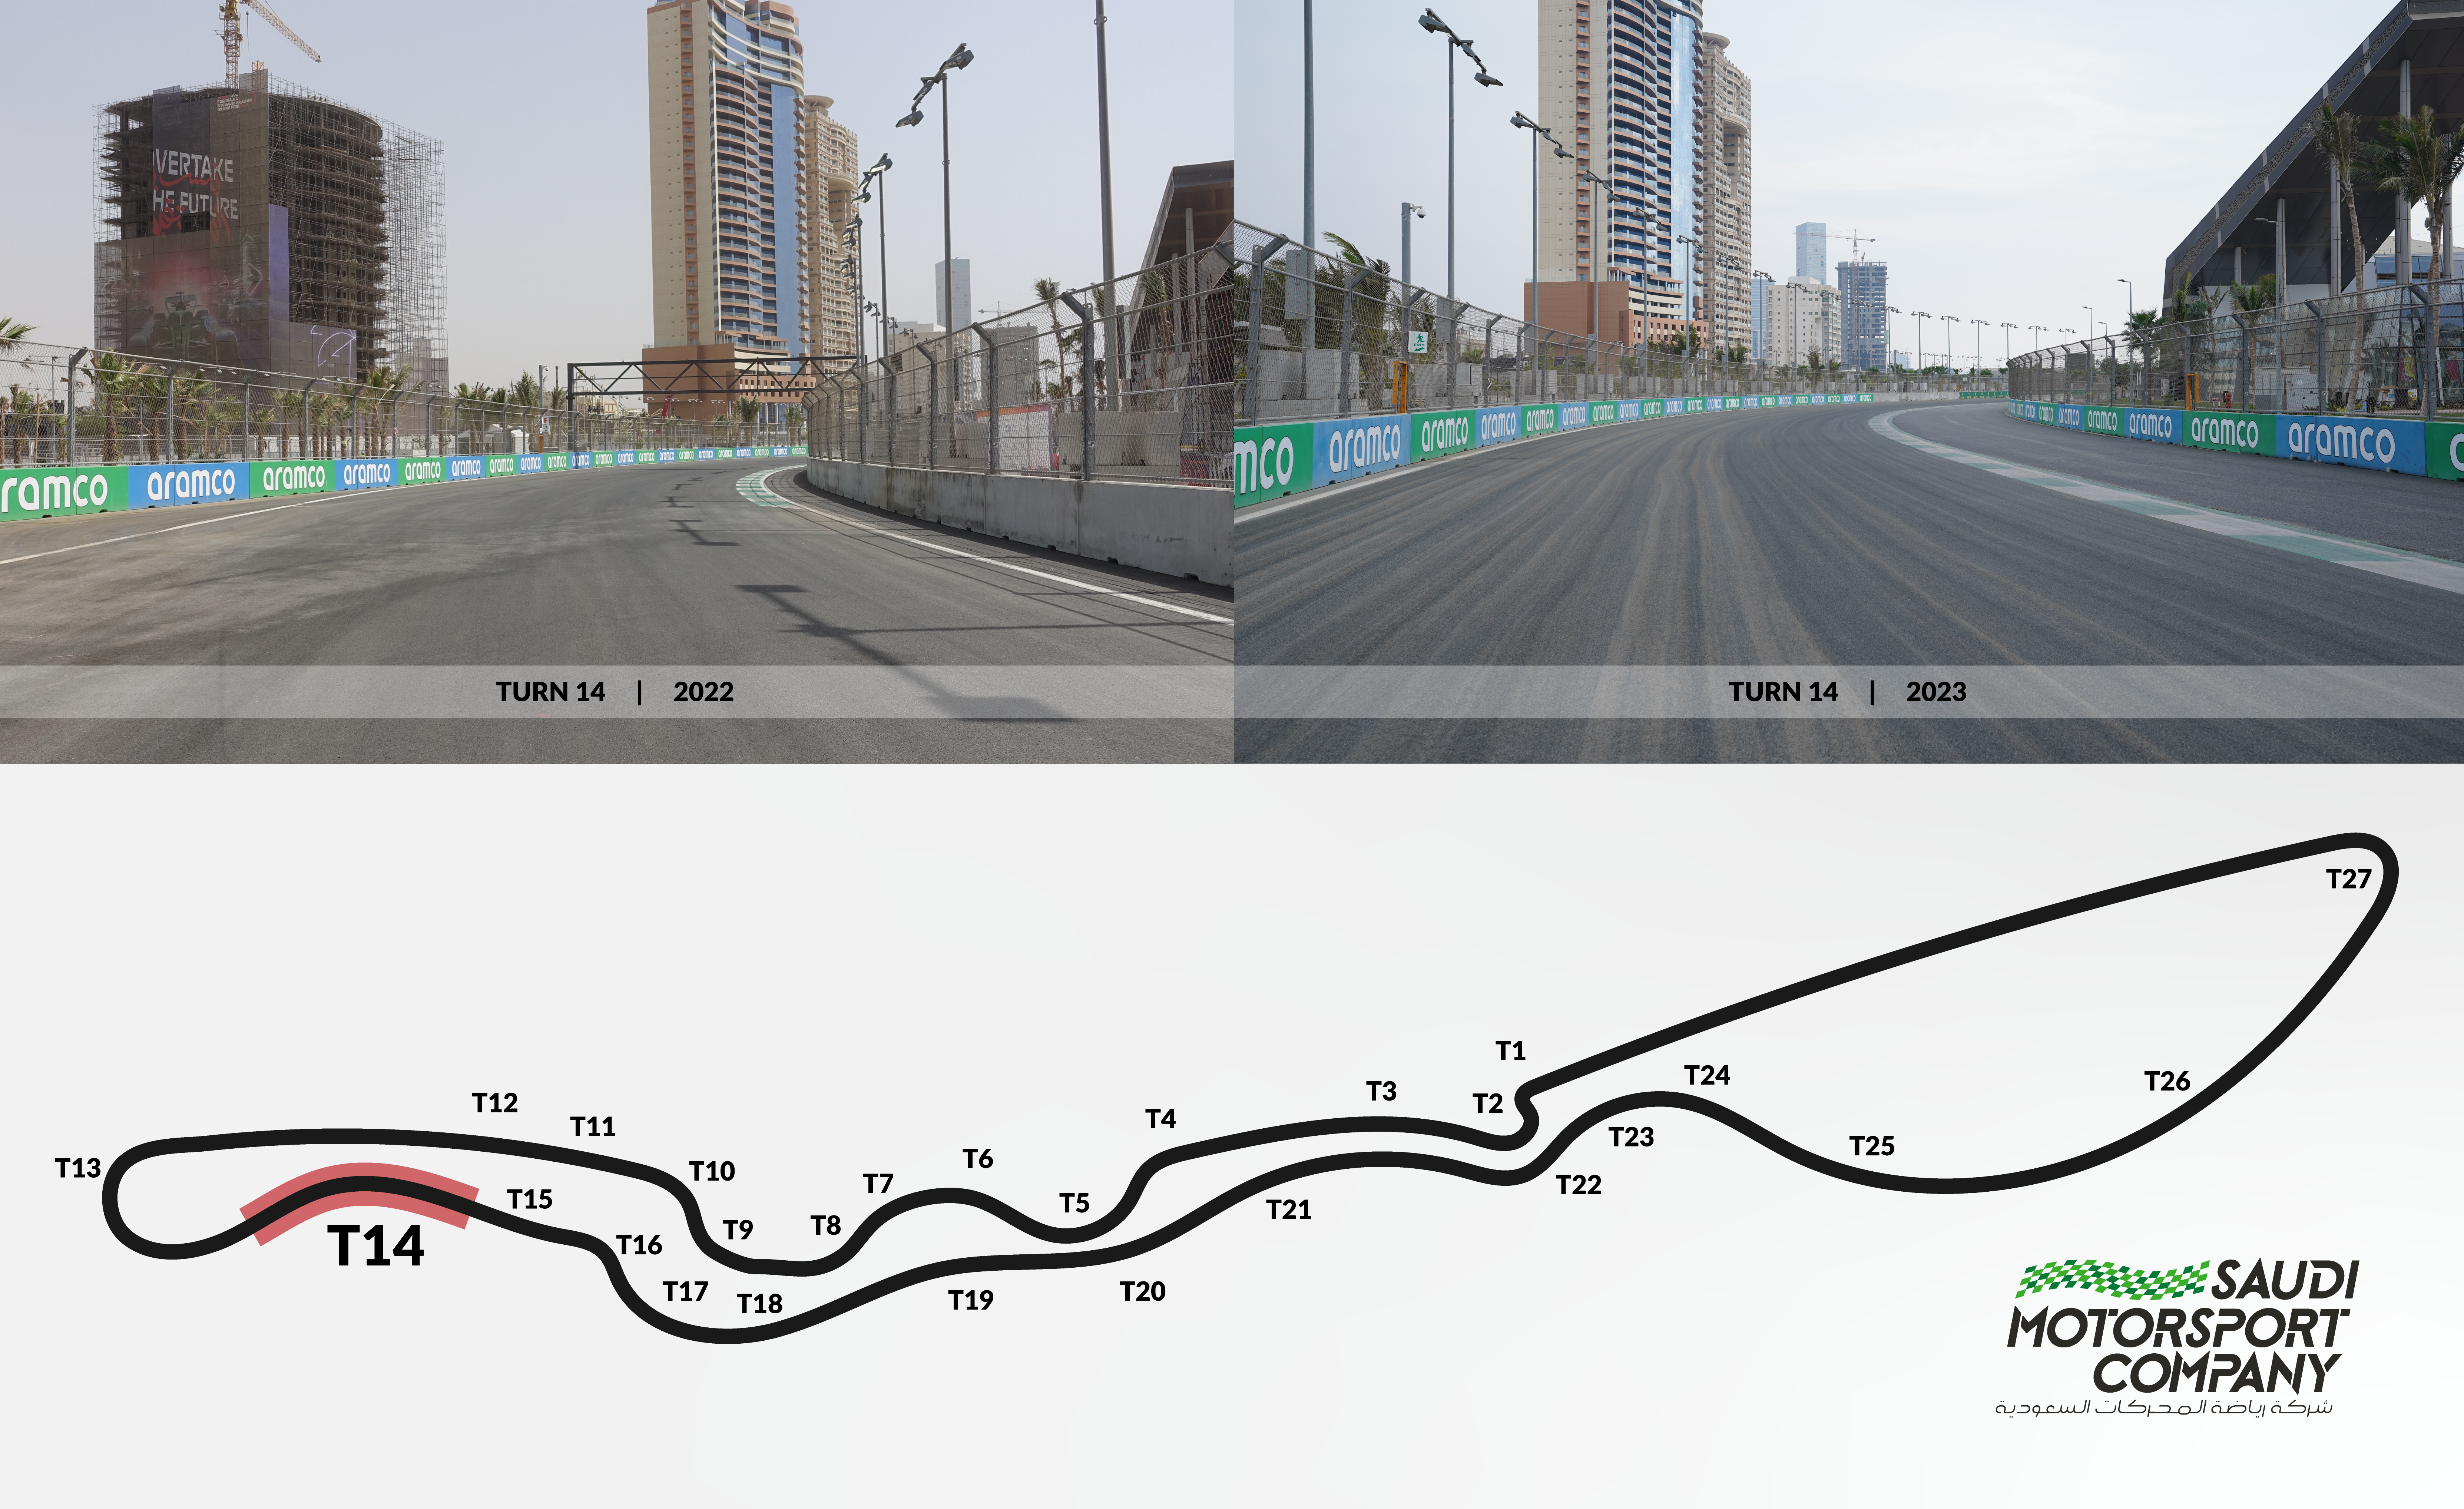 تعديلات إضافية على حلبة كورنيش جدة قبل استضافة سباق جائزة السعودية الكبرى STC للفورمولا 1 في مارس المقبل